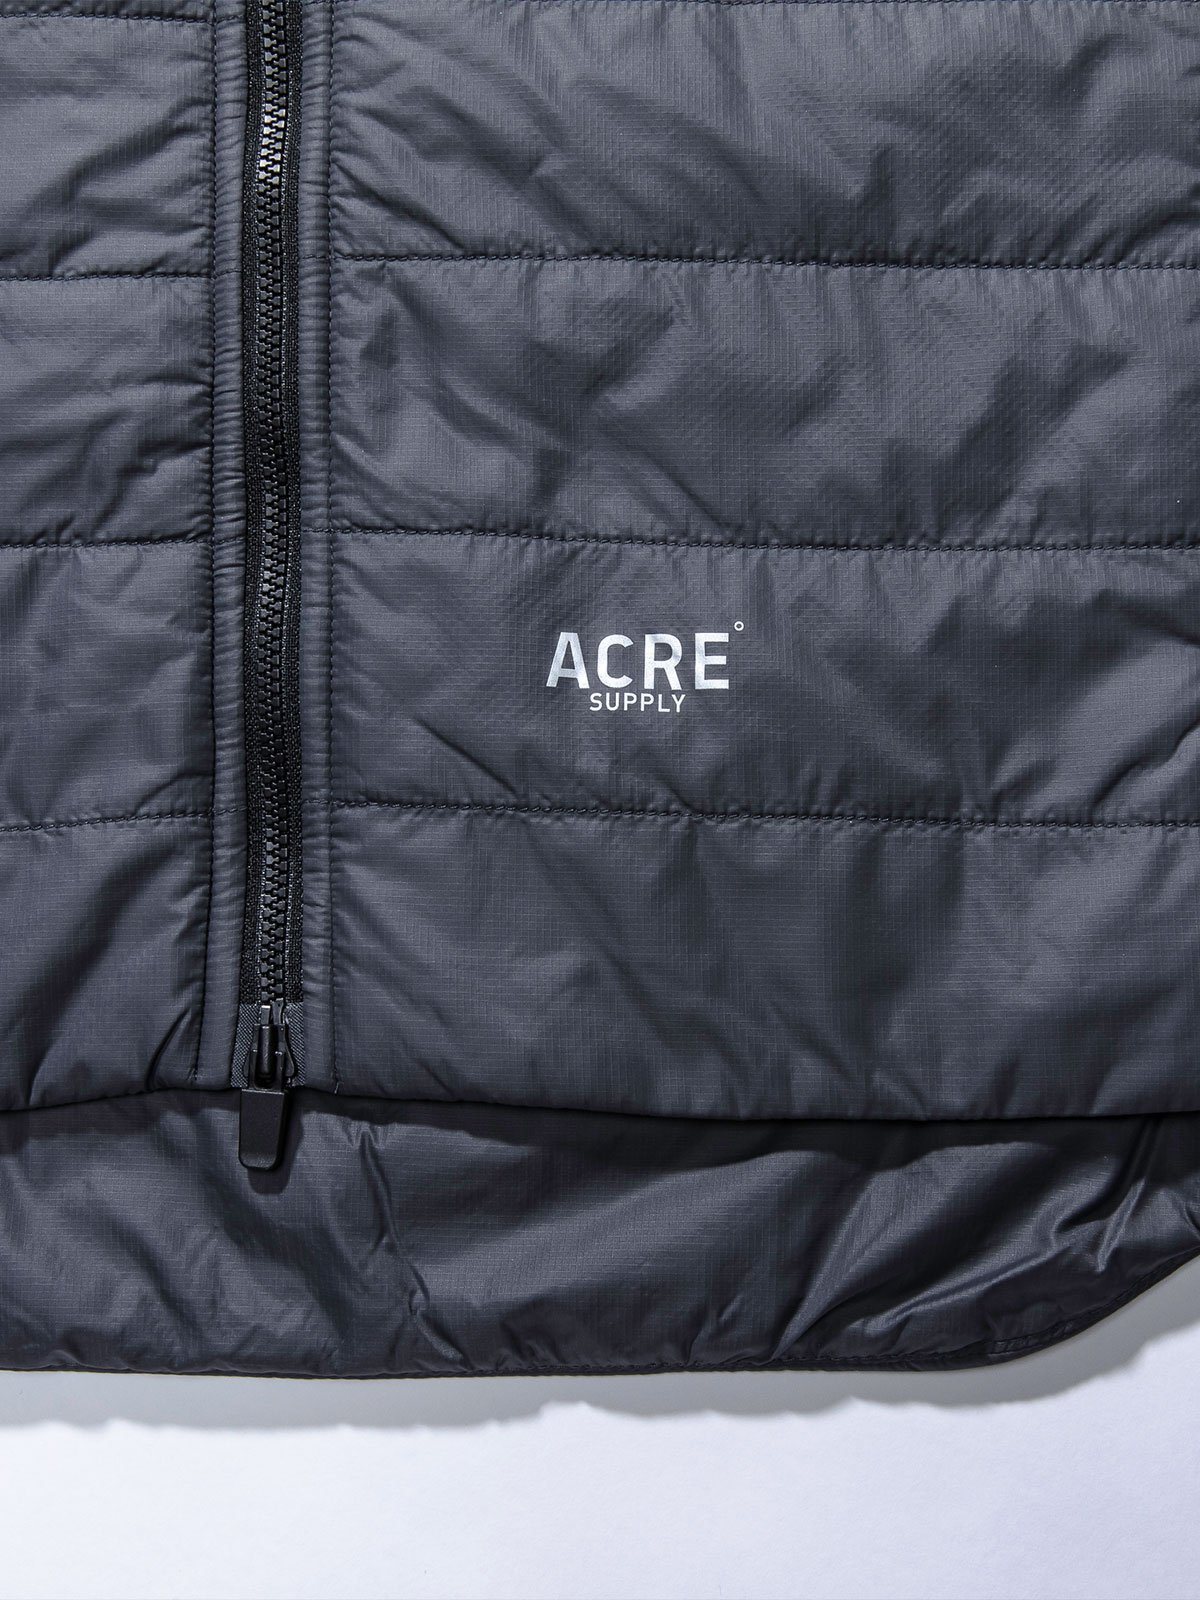 Acre Series Vest by Mission Workshop - Weatherproof Bags & Technical Apparel - San Francisco & Los Angeles - Construit pour durer - Garanti pour toujours